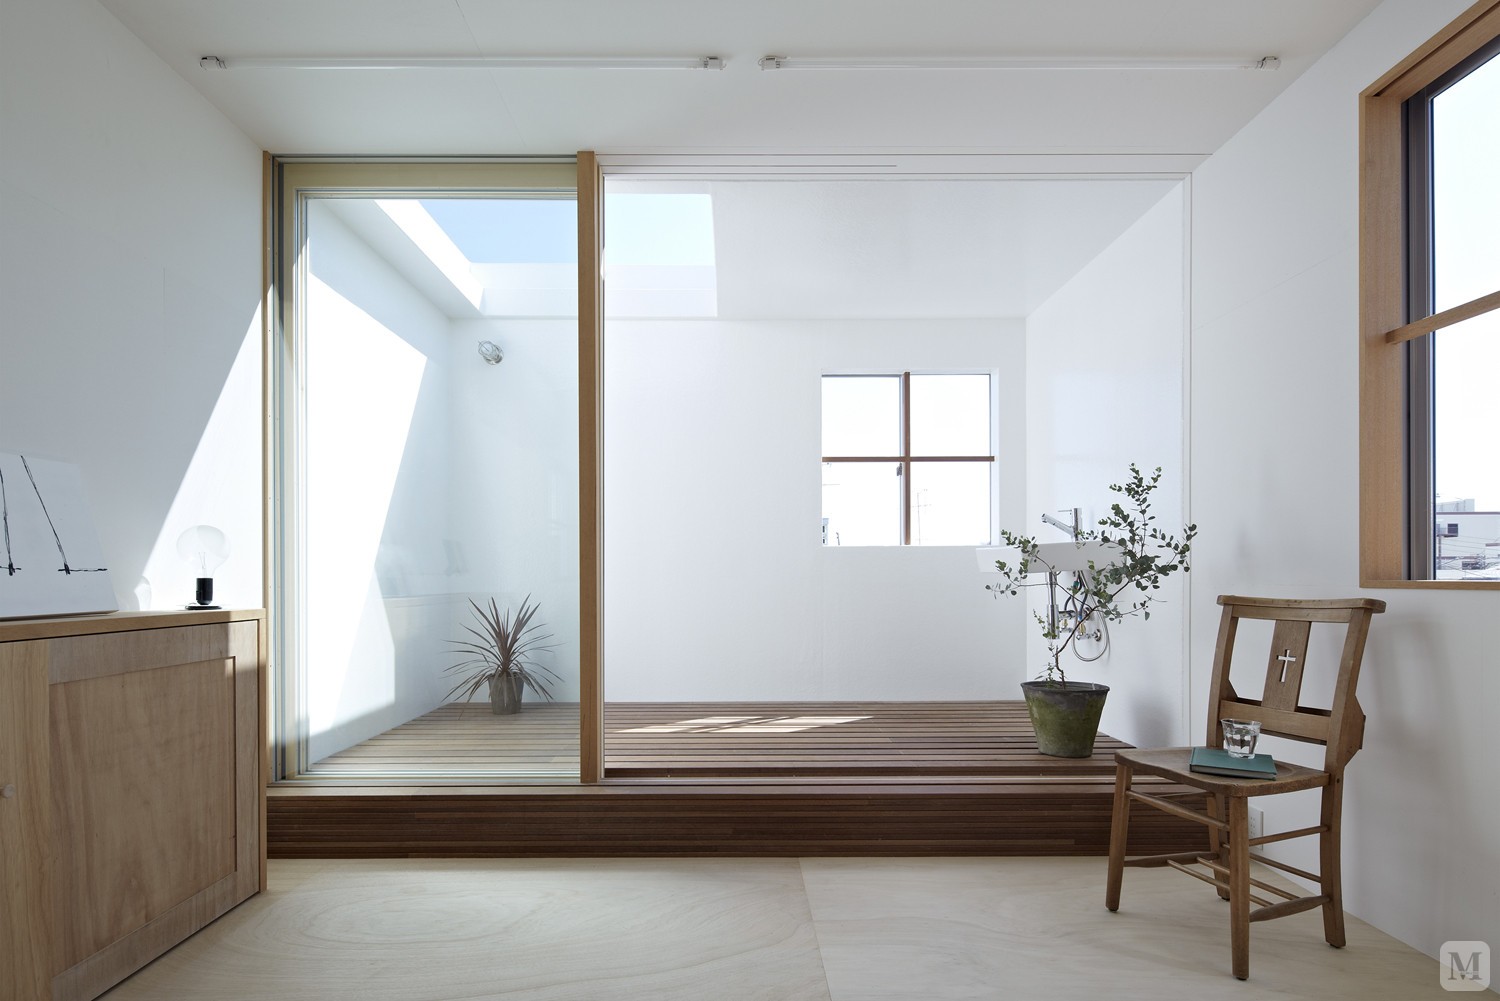 传统的日式家具以其清新自然、简洁的独特品味，形成了独特的家具风格，对于活在都市森林中的我们来说，日式家居环境所营造的闲适、悠然自得的生活境界，也许就是我们所追求的。